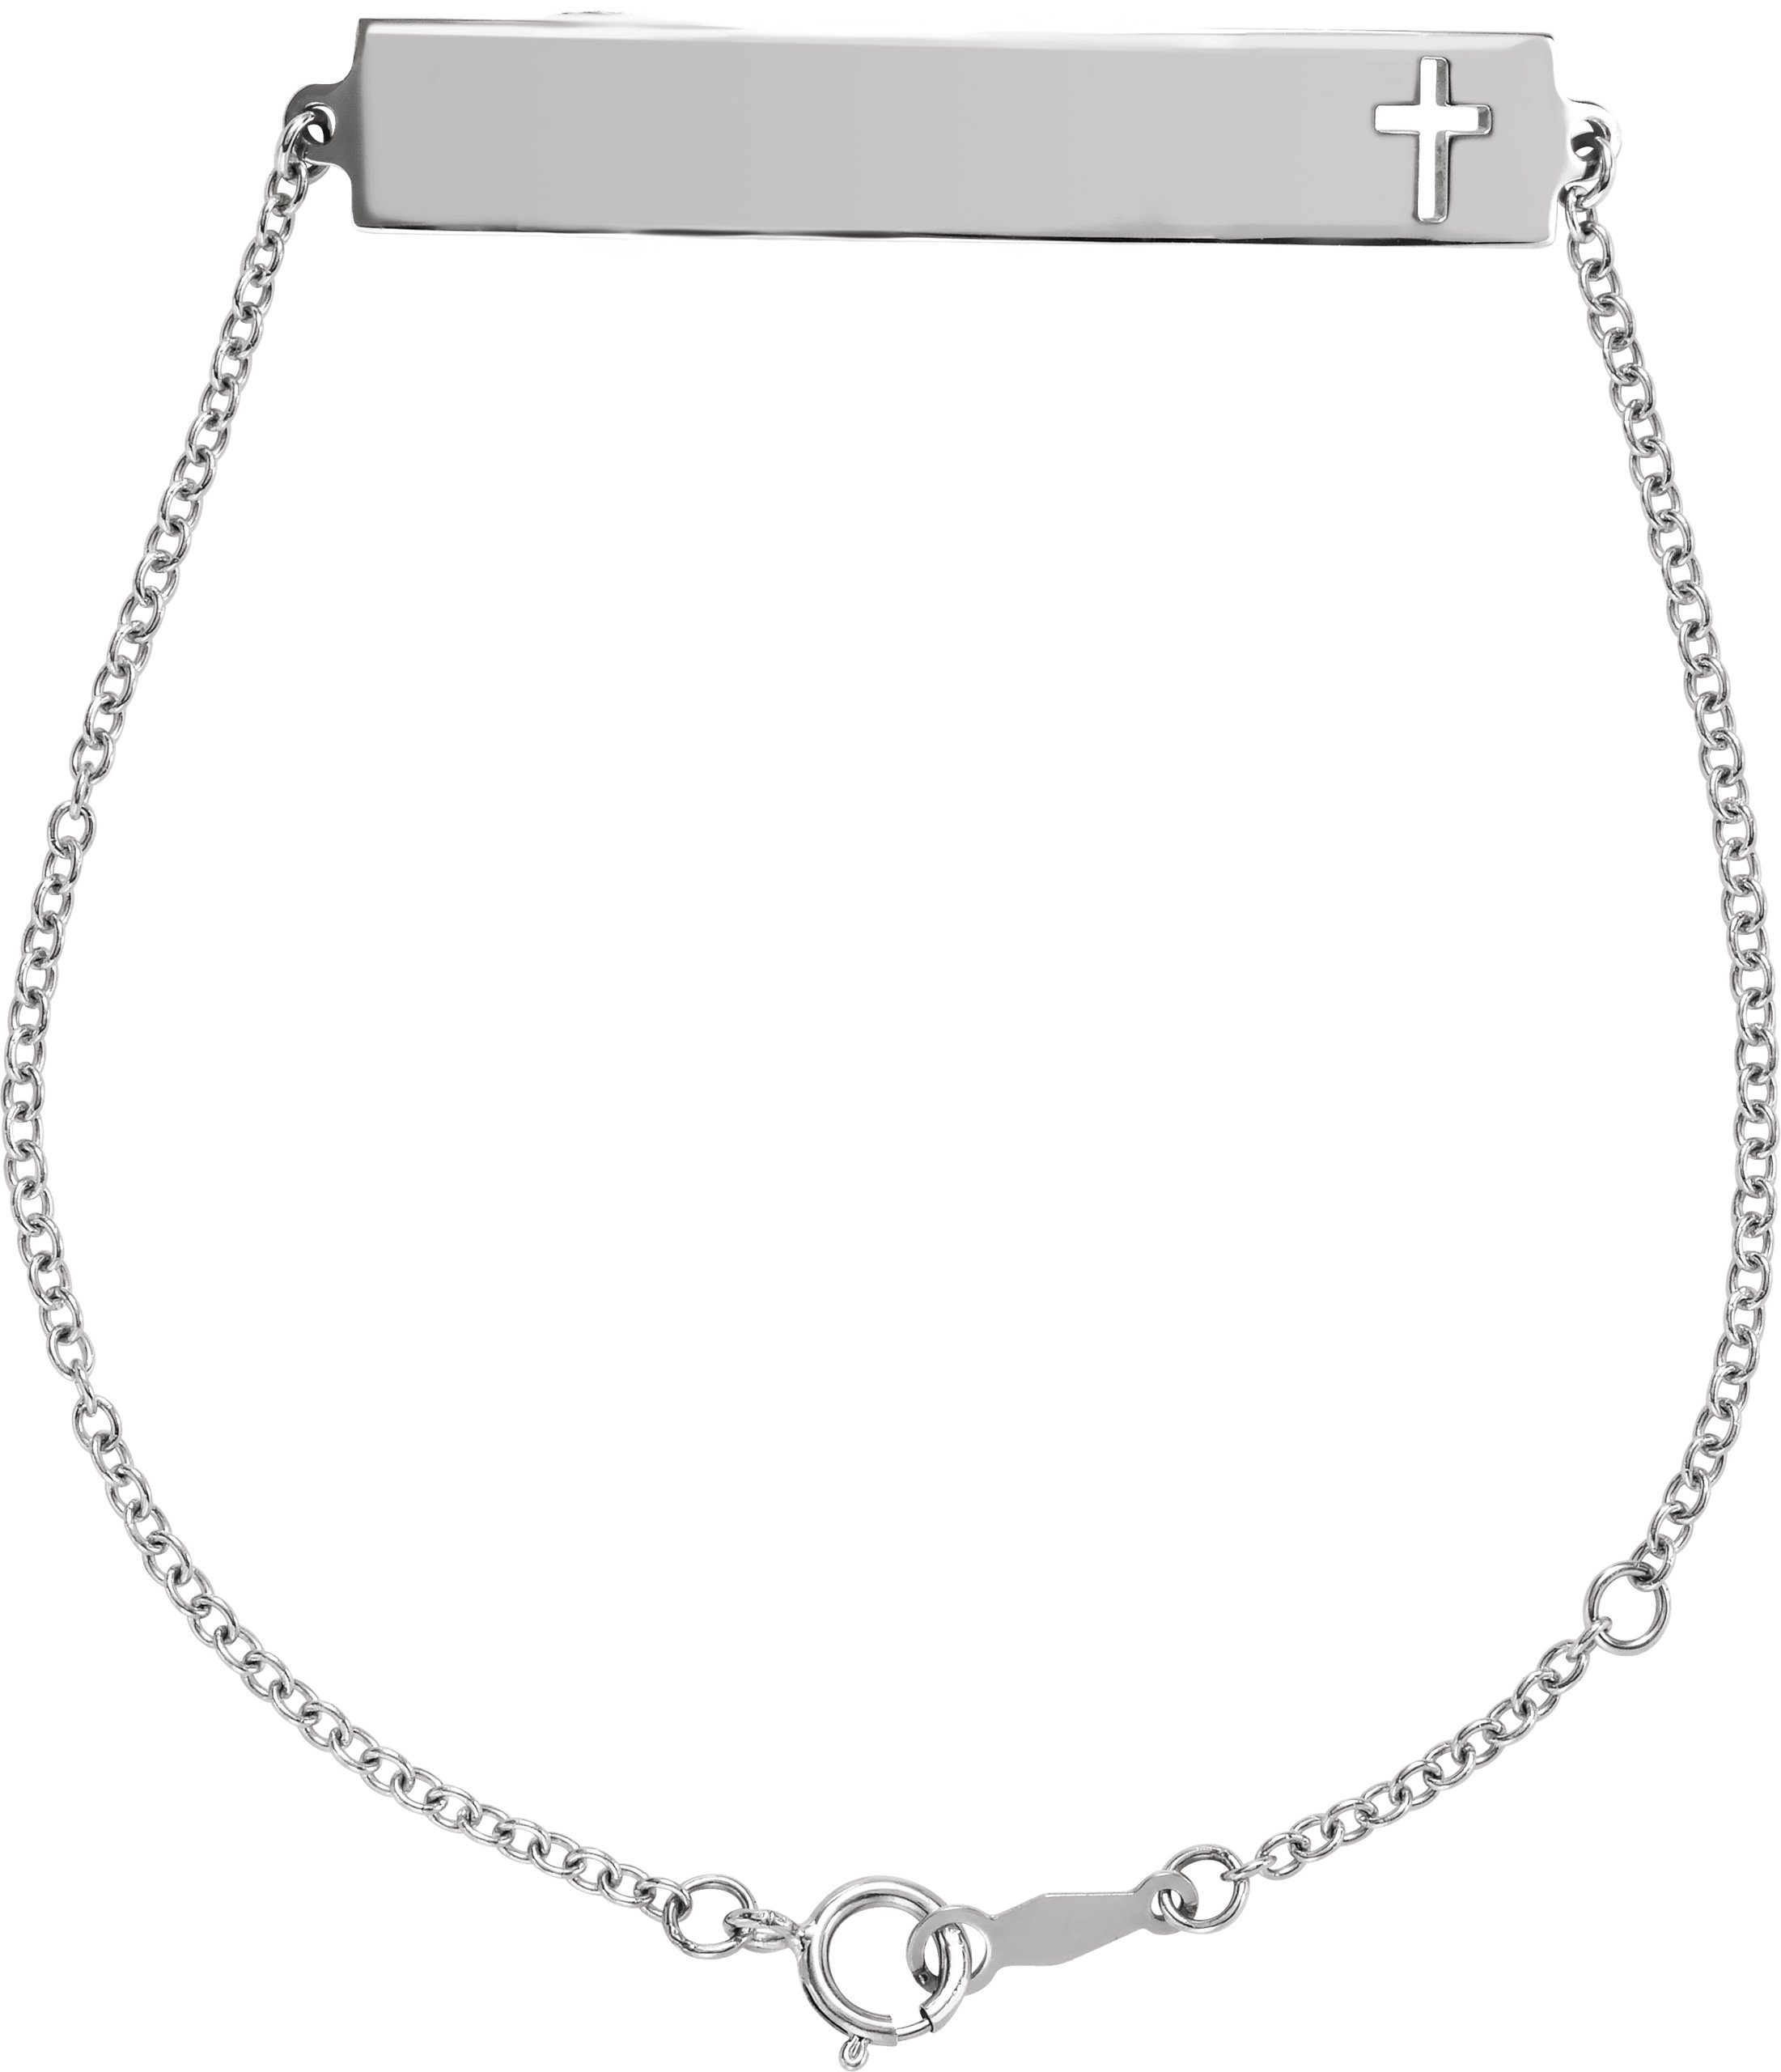 Sterling Silver Engravable Pierced Cross Bar 6 1/2-7 1/2" Bracelet